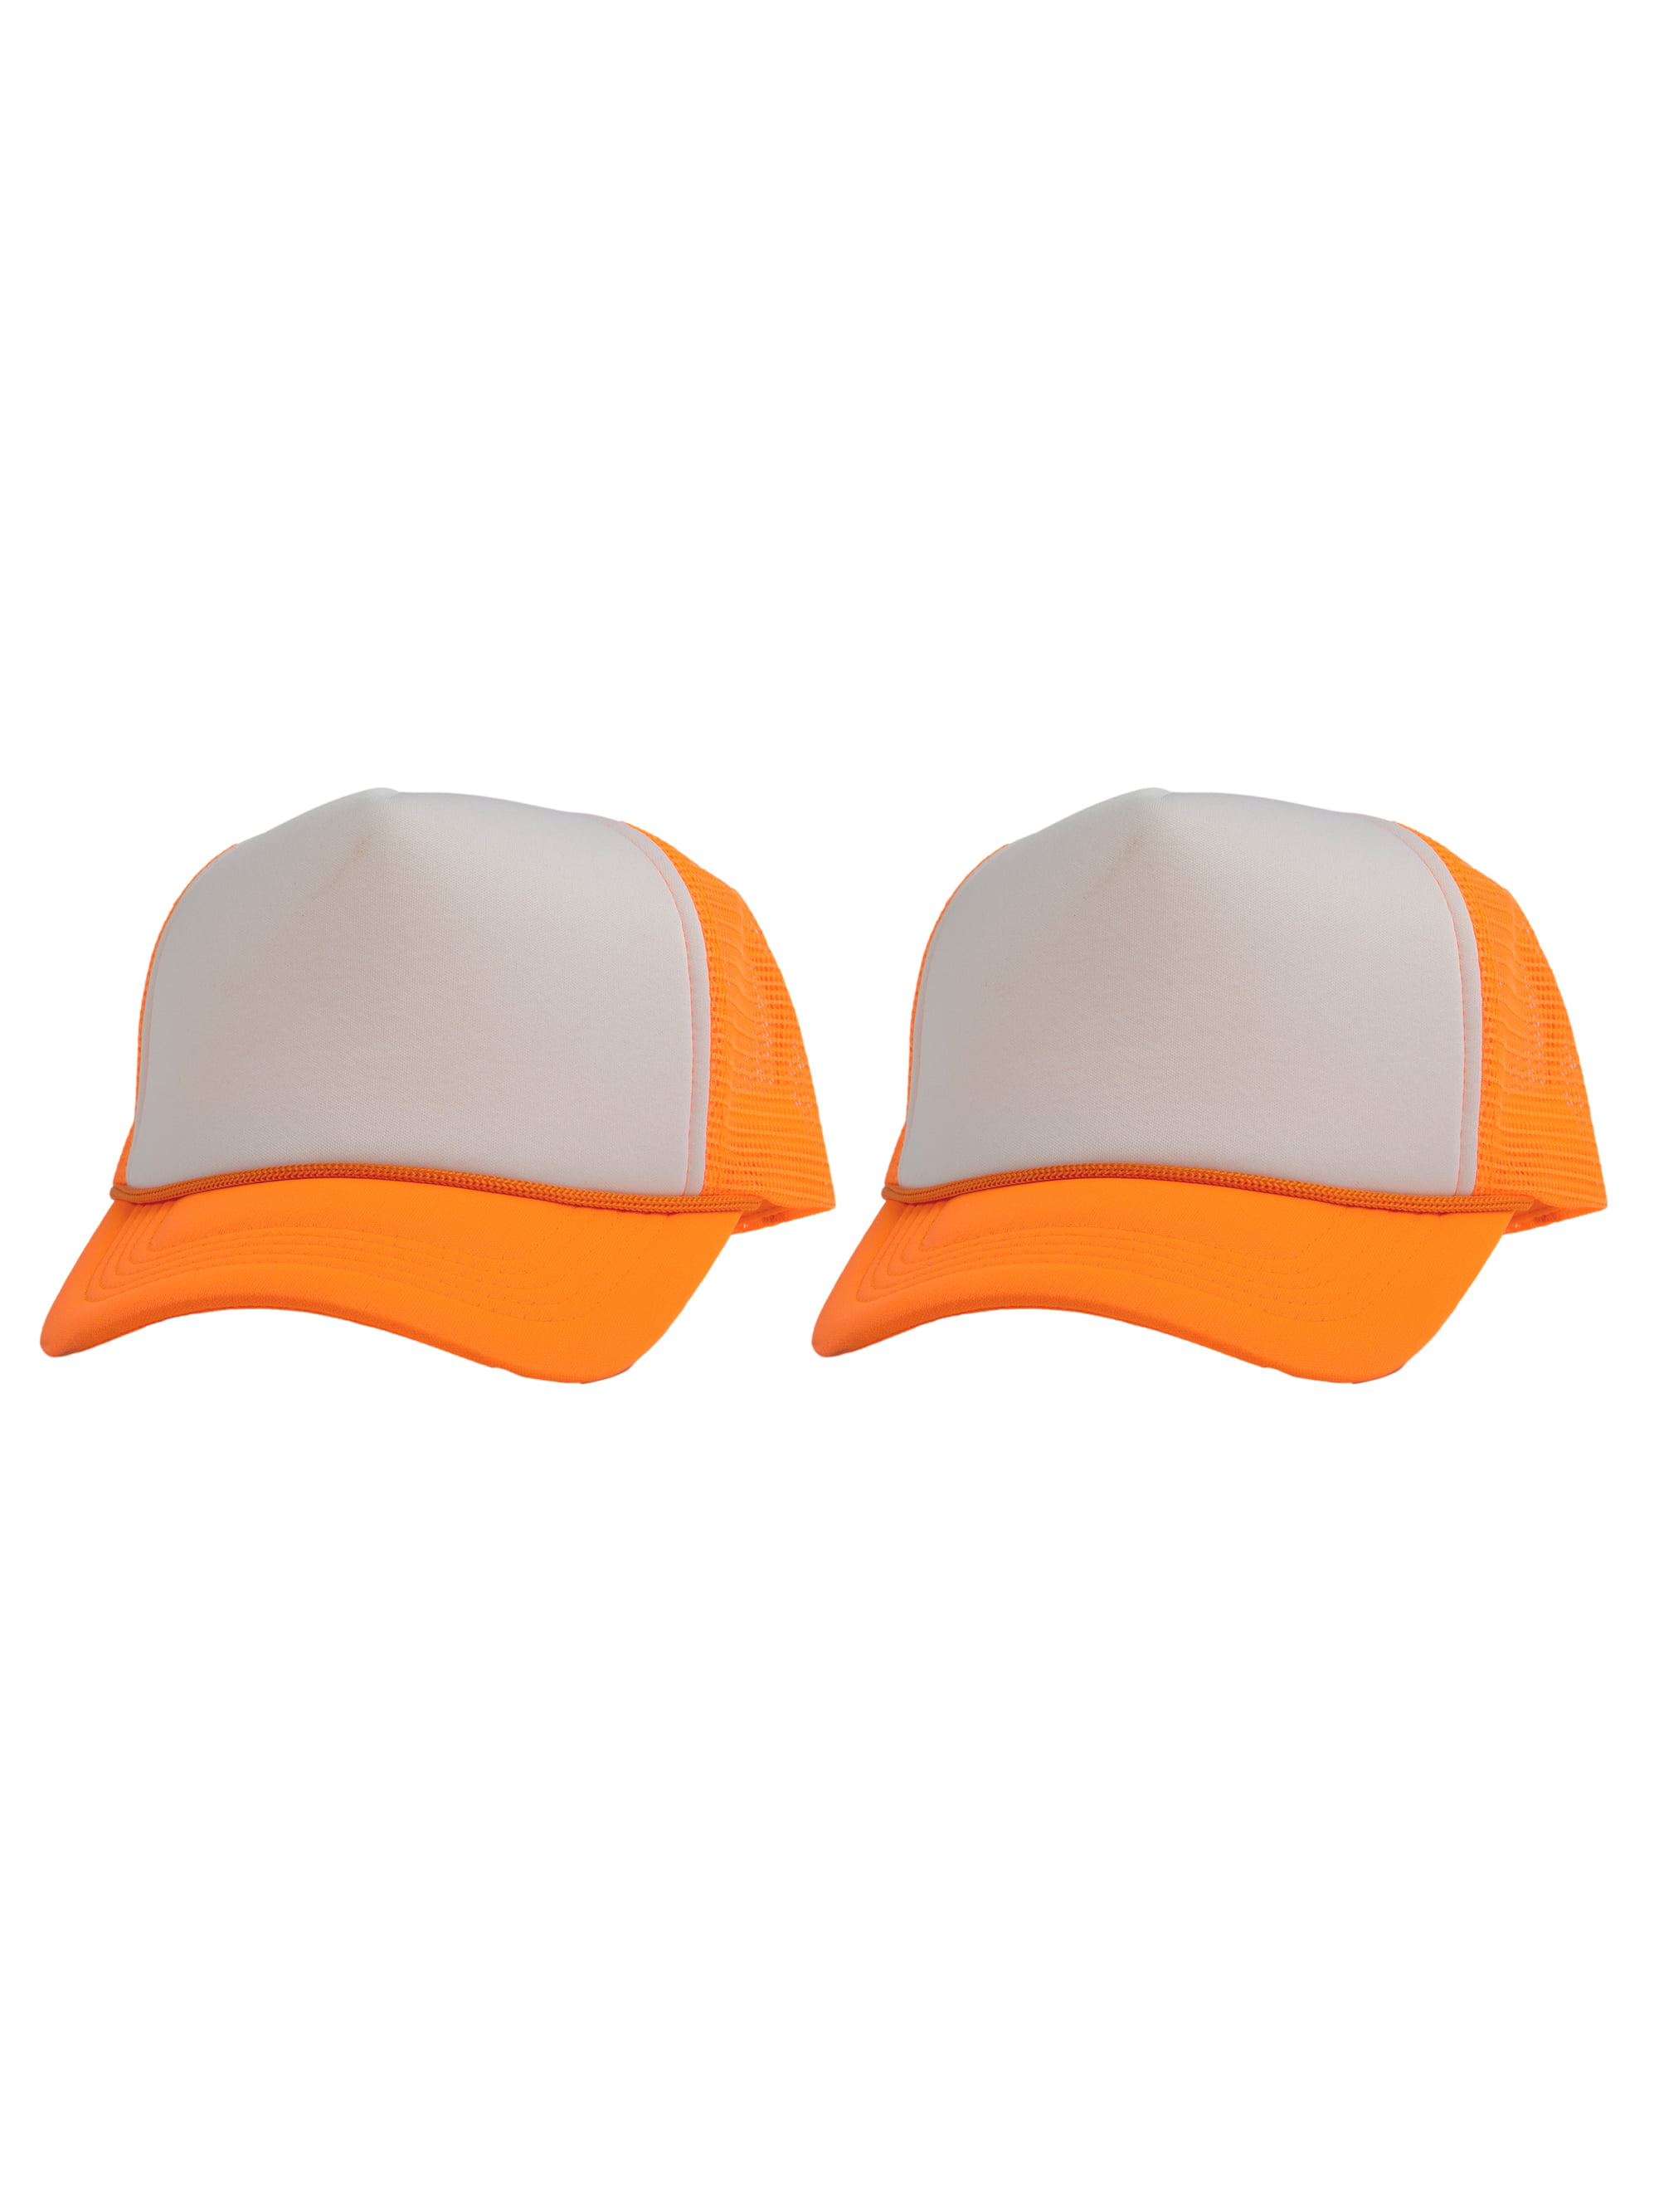 Top Headwear Men's Blank Rope Trucker Foam Mesh Plain Hats, 2PC White/Neon  Orange